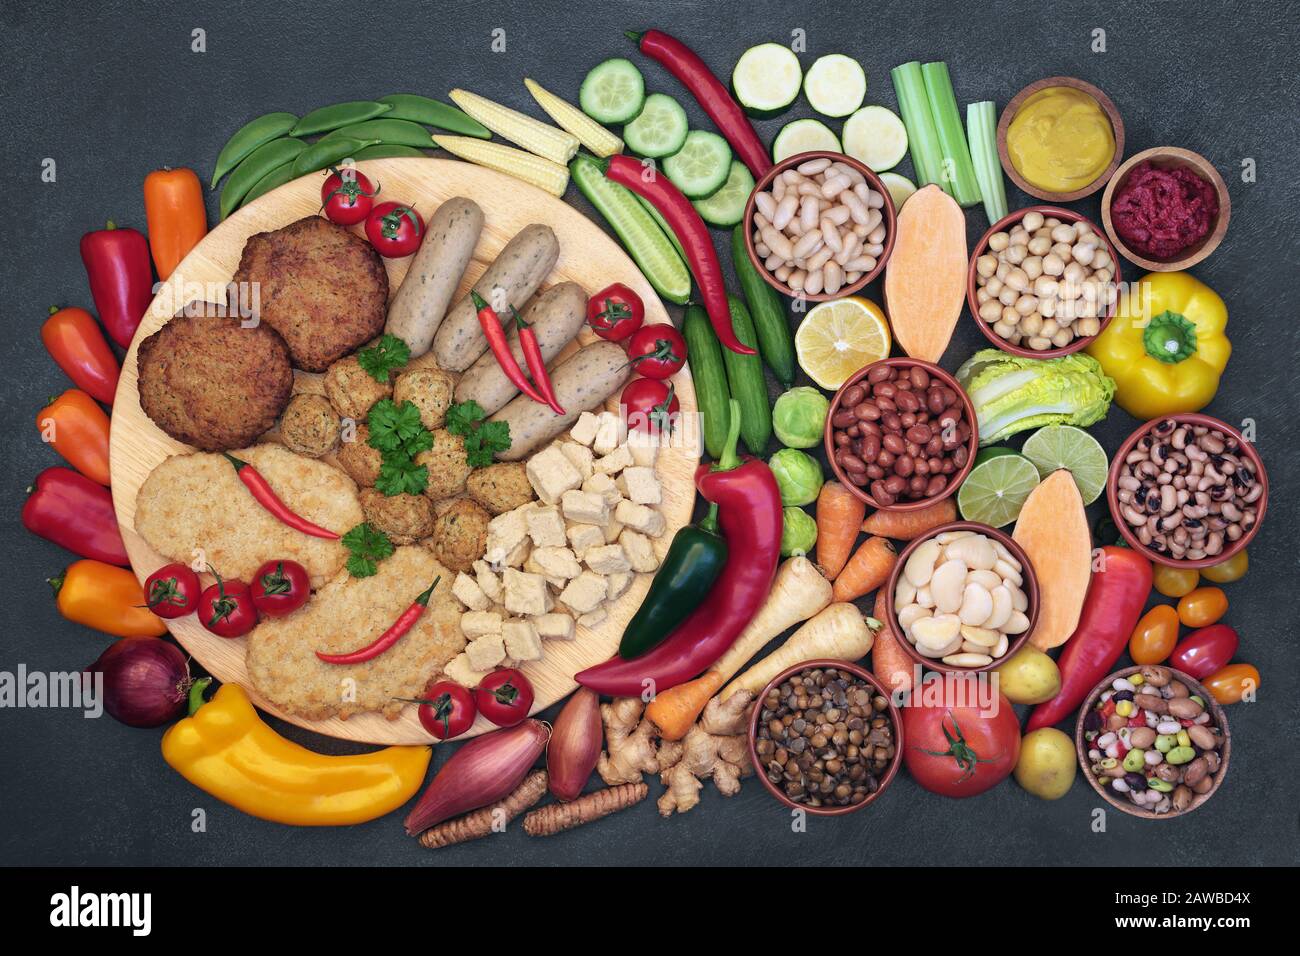 Nourriture végétalienne pour la santé pour manger éthique avec des aliments riches en protéines, vitamines, minéraux, anthocyanines, antioxydants, fibres, oméga 3 et glucides intelligents. Banque D'Images